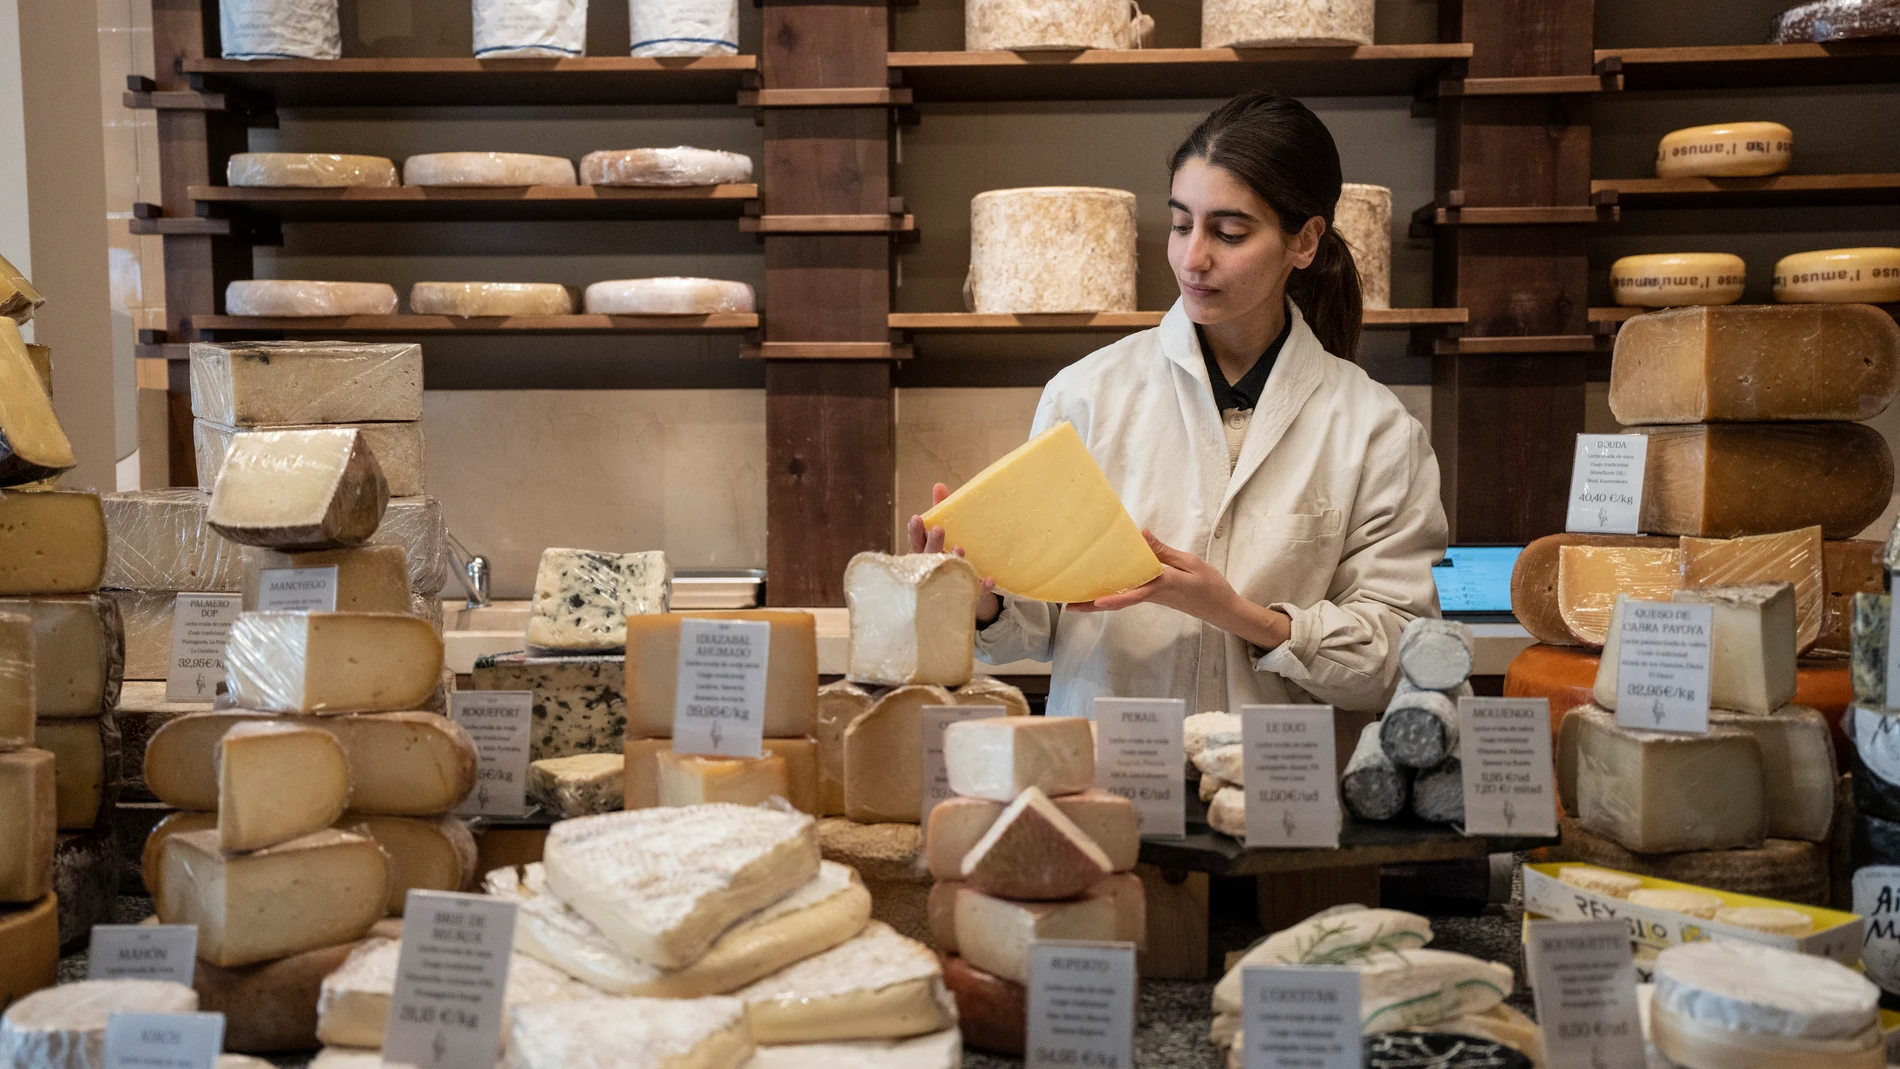 Formaje, tienda de quesos artesanos en Madrid David Jar